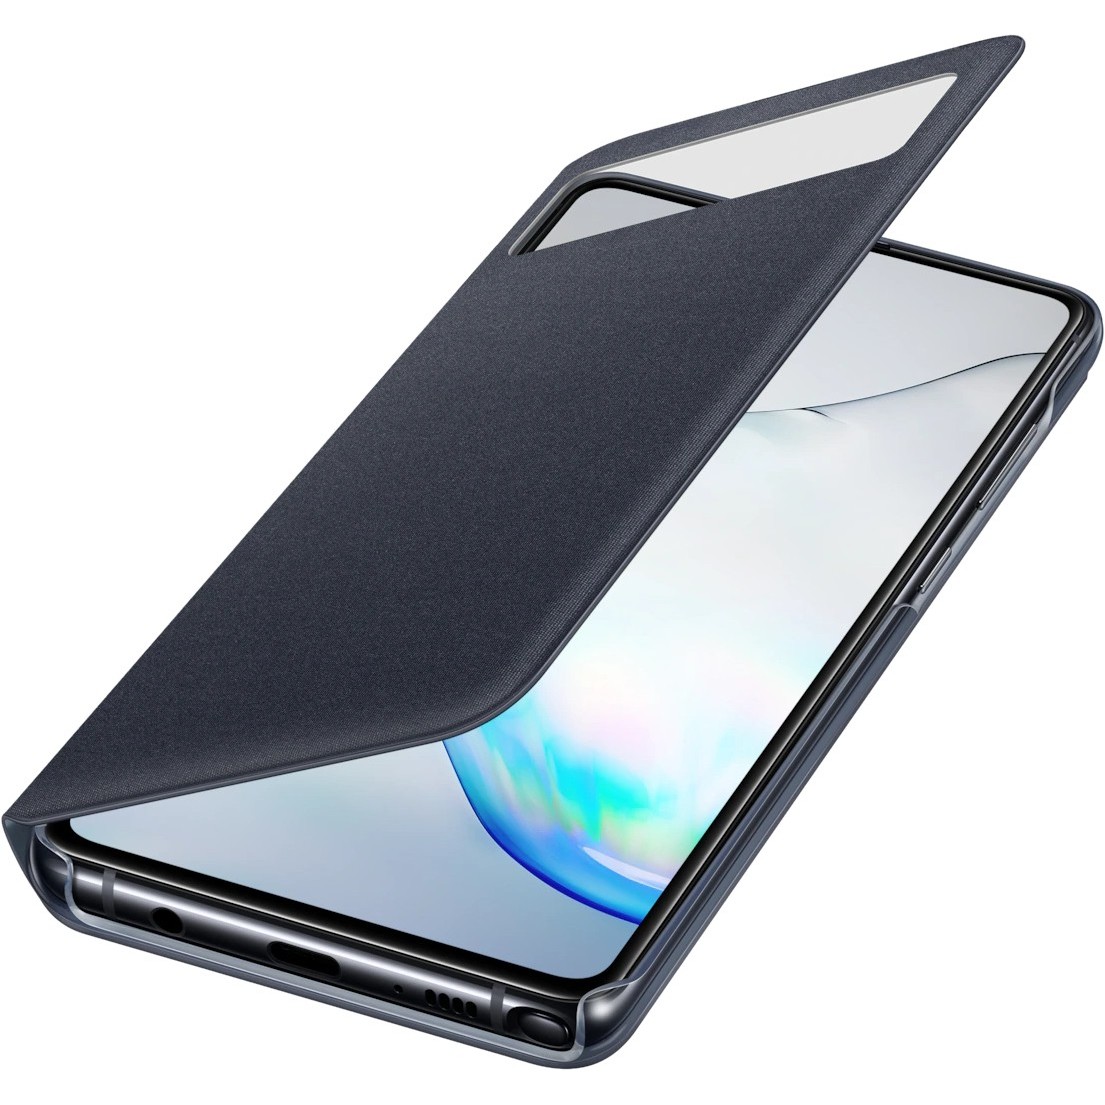 Samsung N770 Galaxy Note 10 Lite